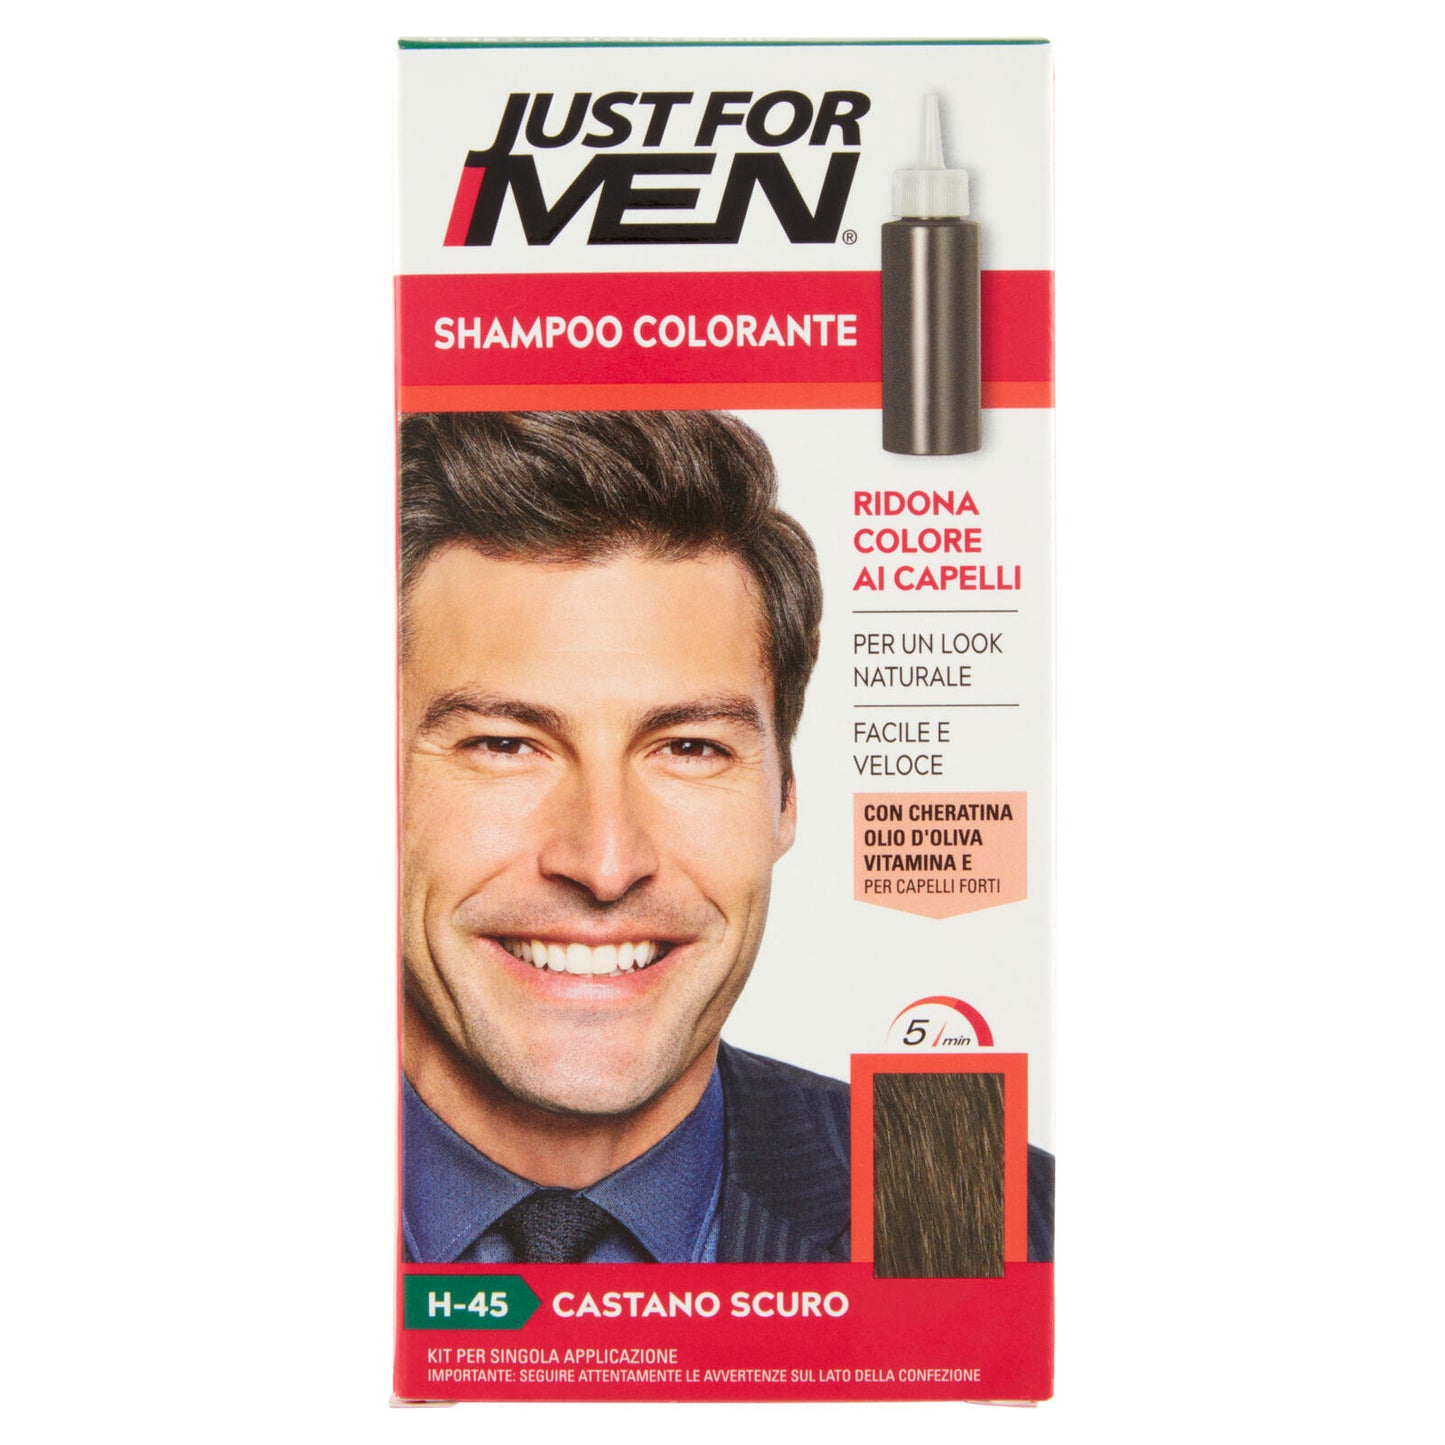 Just For Men Shampoo Colorante H-45 Castano Scuro